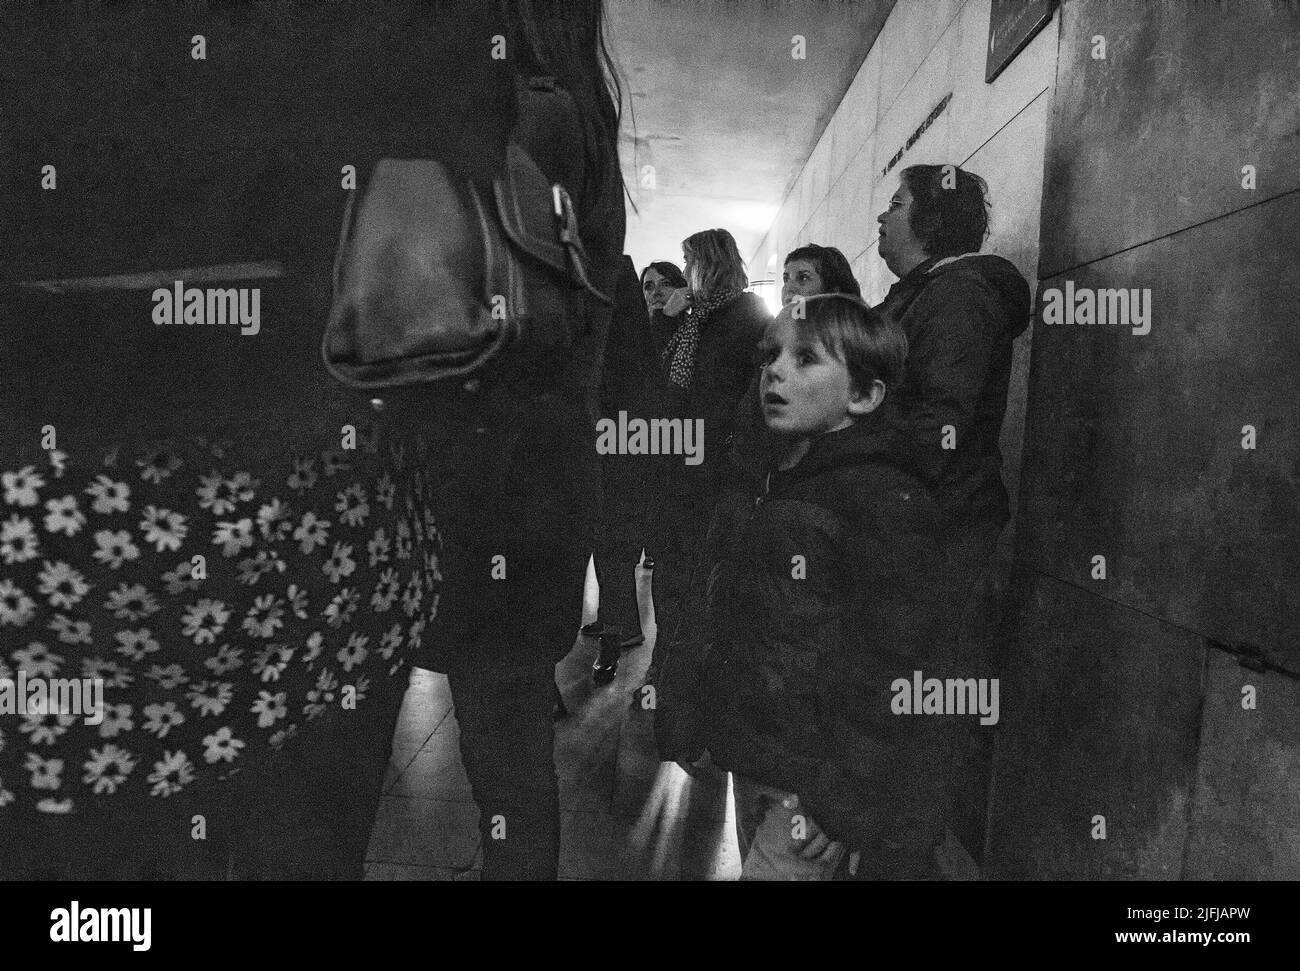 05-14-2016 Parigi . Persone in linea presso la piattaforma di osservazione dell'Arc de Triouf sottostante. Bianco e nero. Ragazzo carino circa 10 anni. Foto Stock